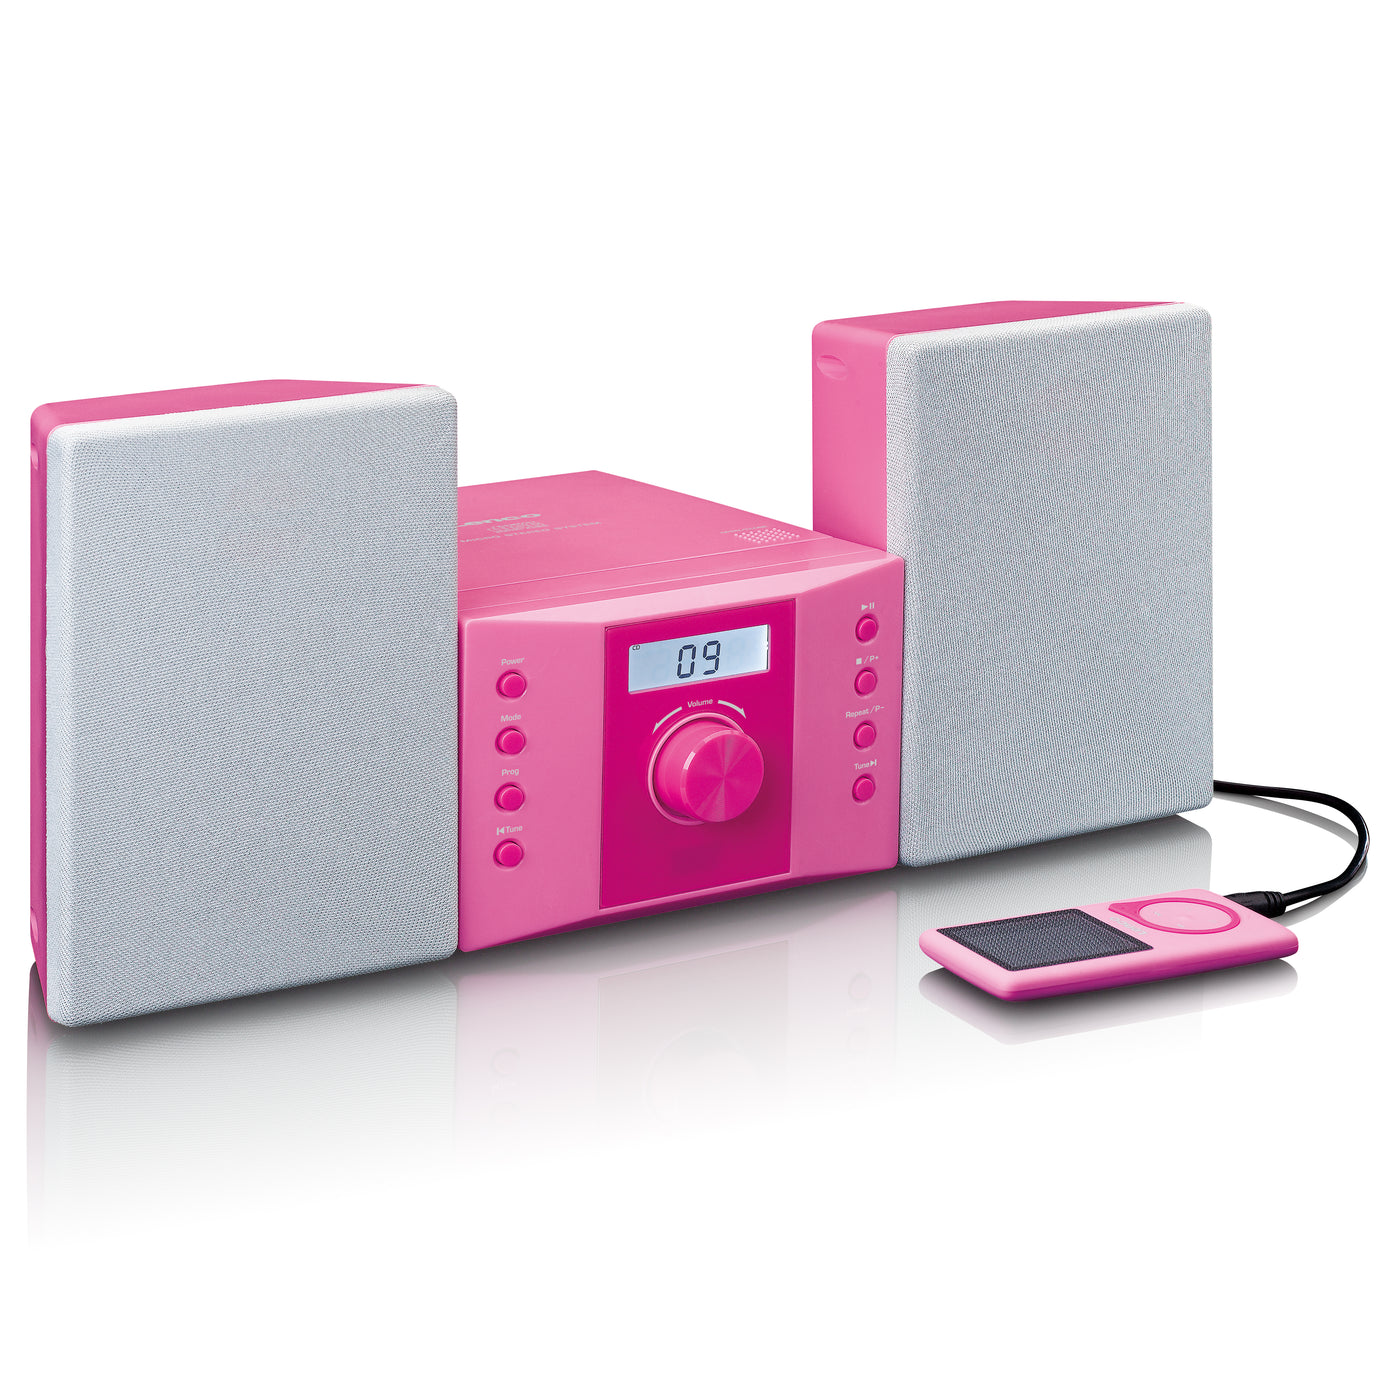 Lenco MC-013PK - Stereoanlage mit FM-Radio und CD-Player - Pink